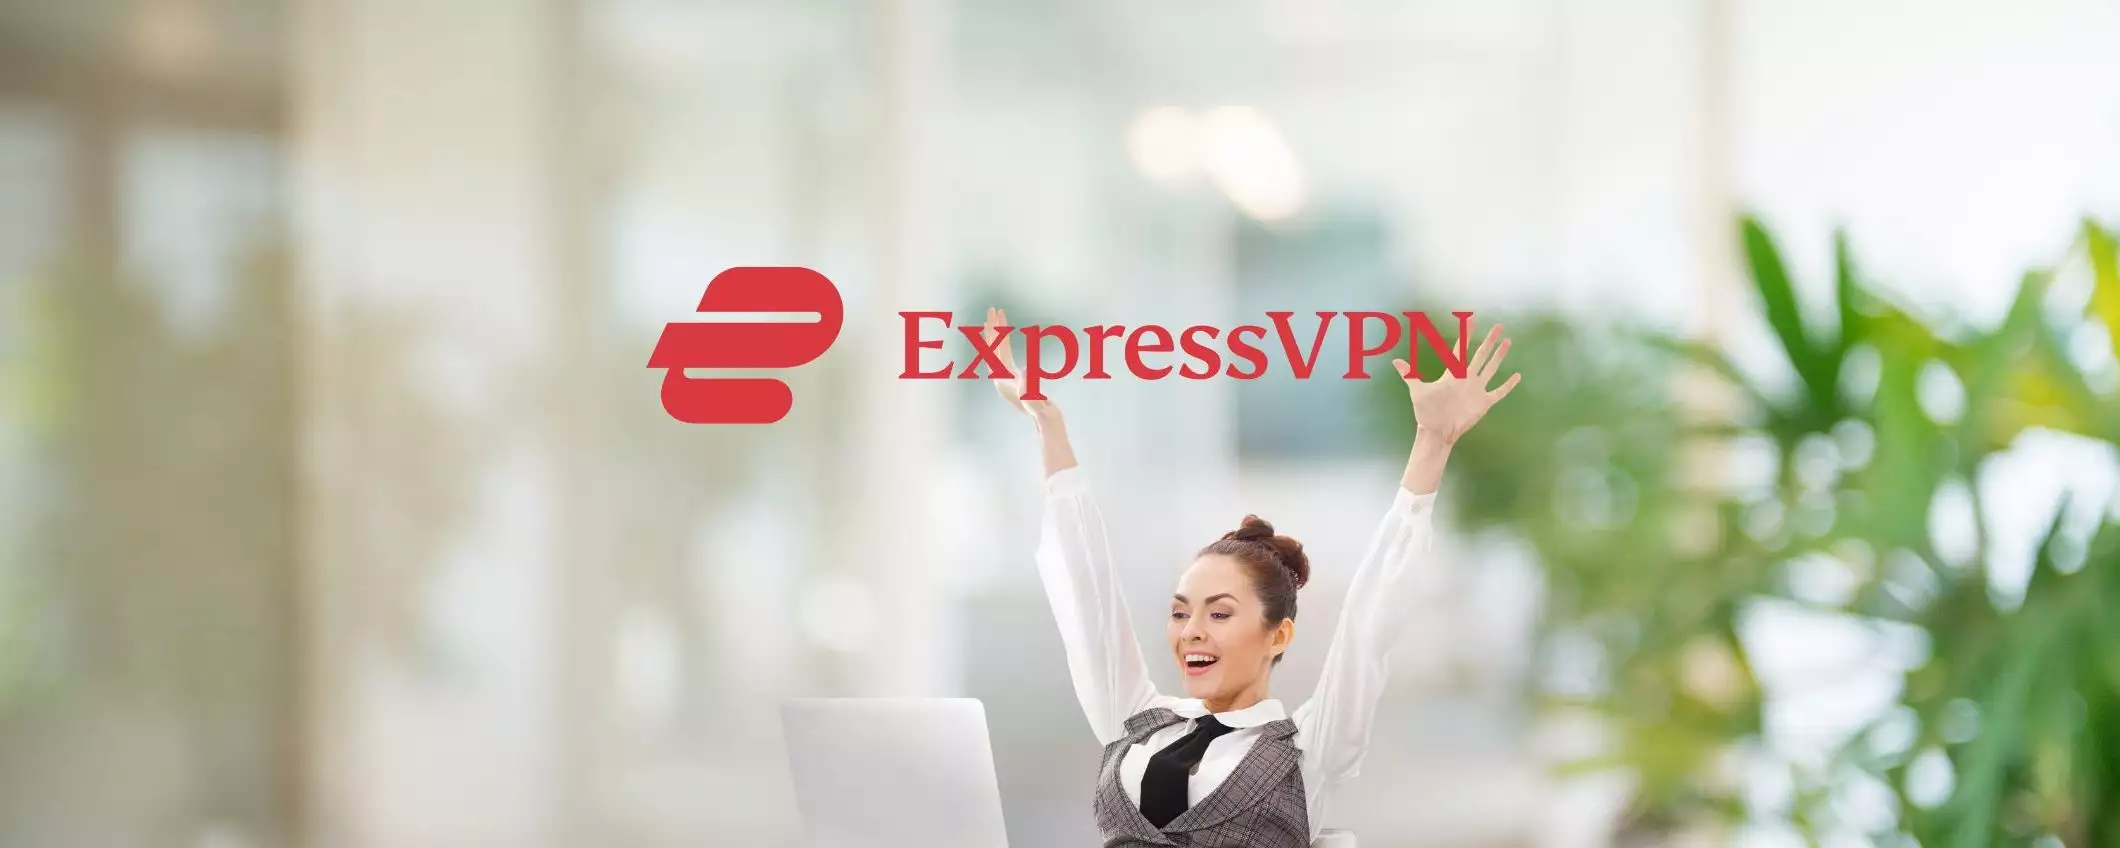 Offerta speciale ExpressVPN: metà prezzo e 3 mesi gratis